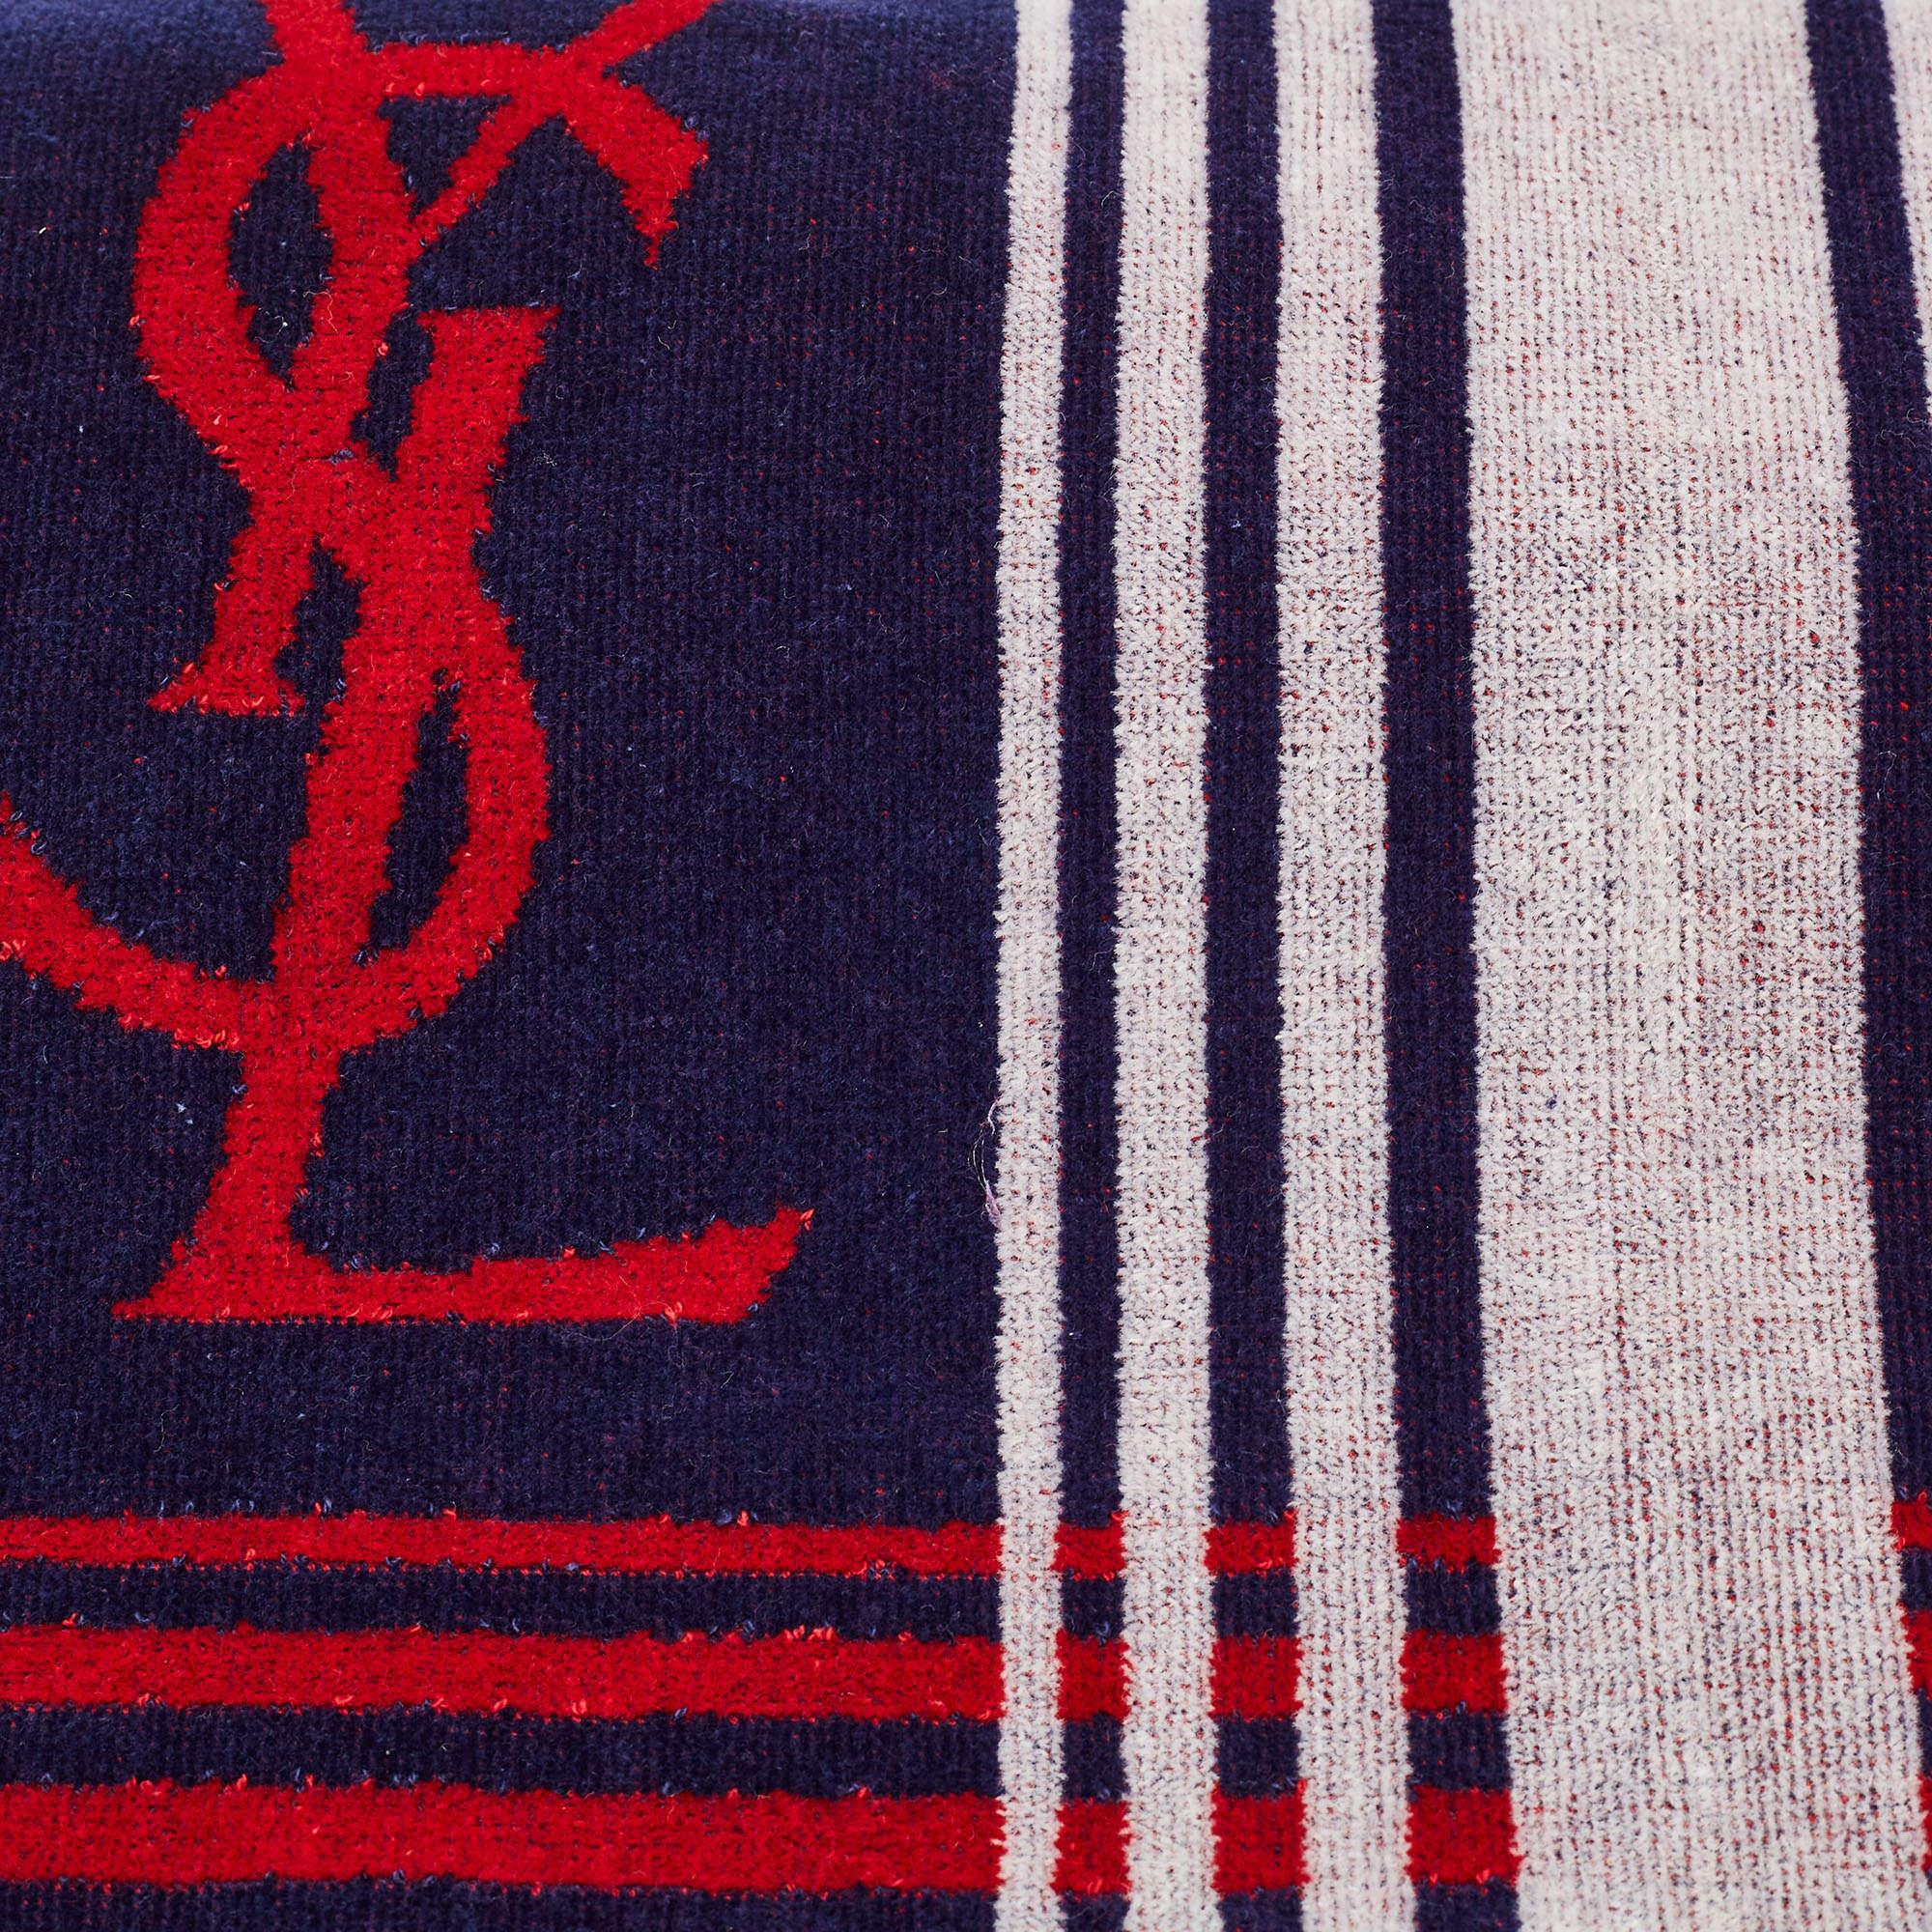 Fabrice en tissu de qualité, cette serviette YSL présente des détails de logo, des nuances de rouge et de blanc et une texture douce. Les finitions sont impeccables.

Comprend : Boîte d'origine